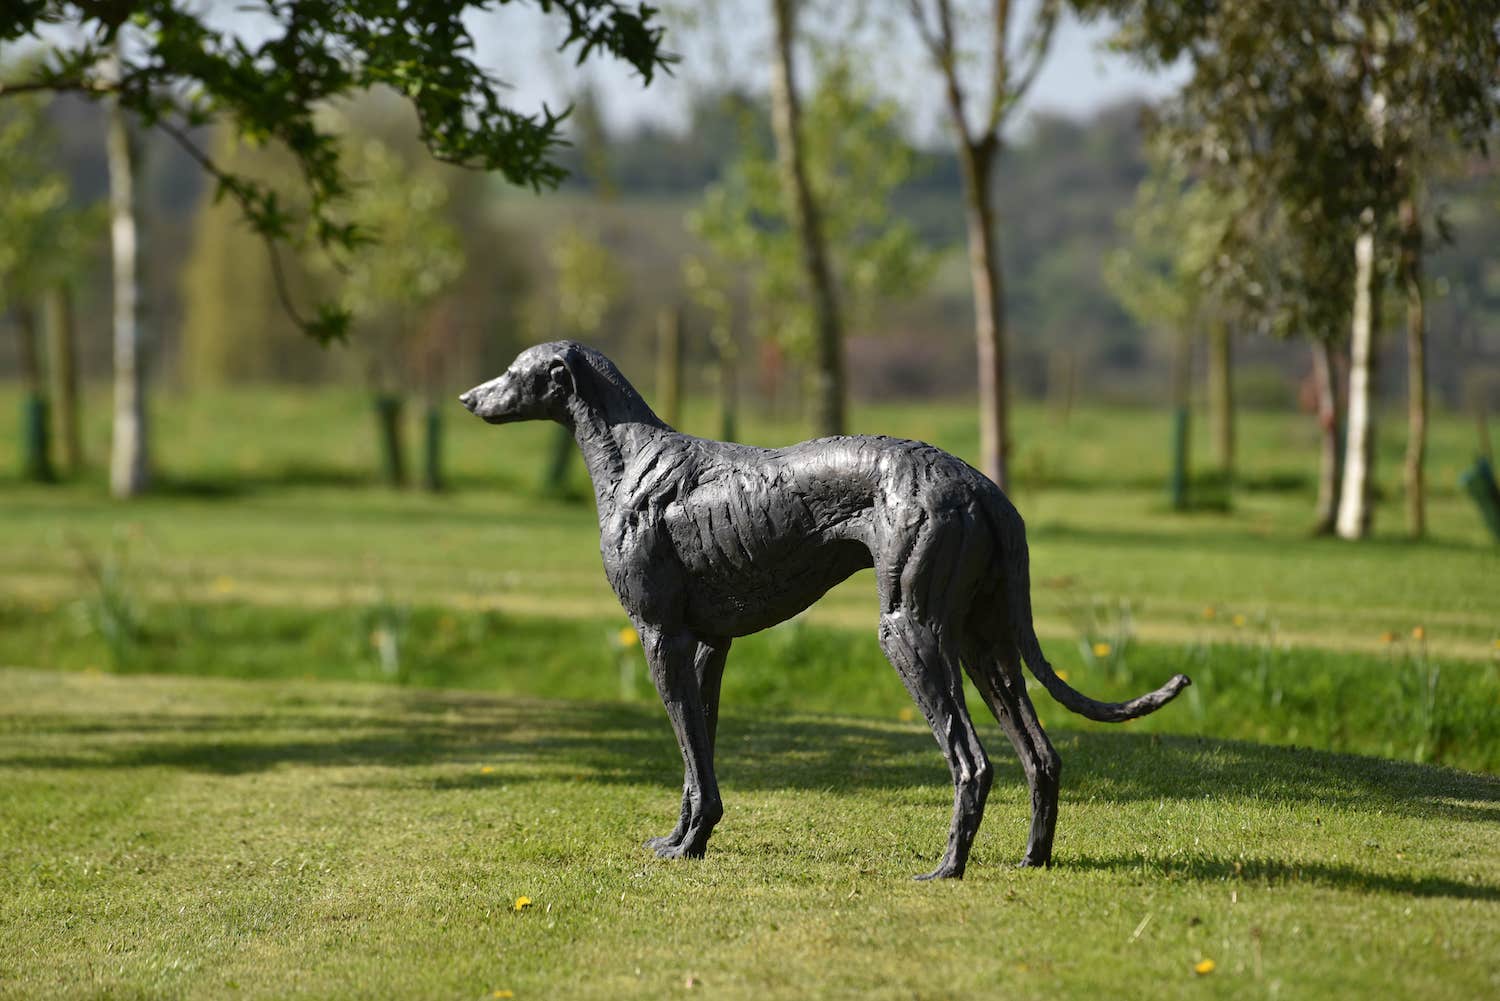 Greyhound sculpture in garden